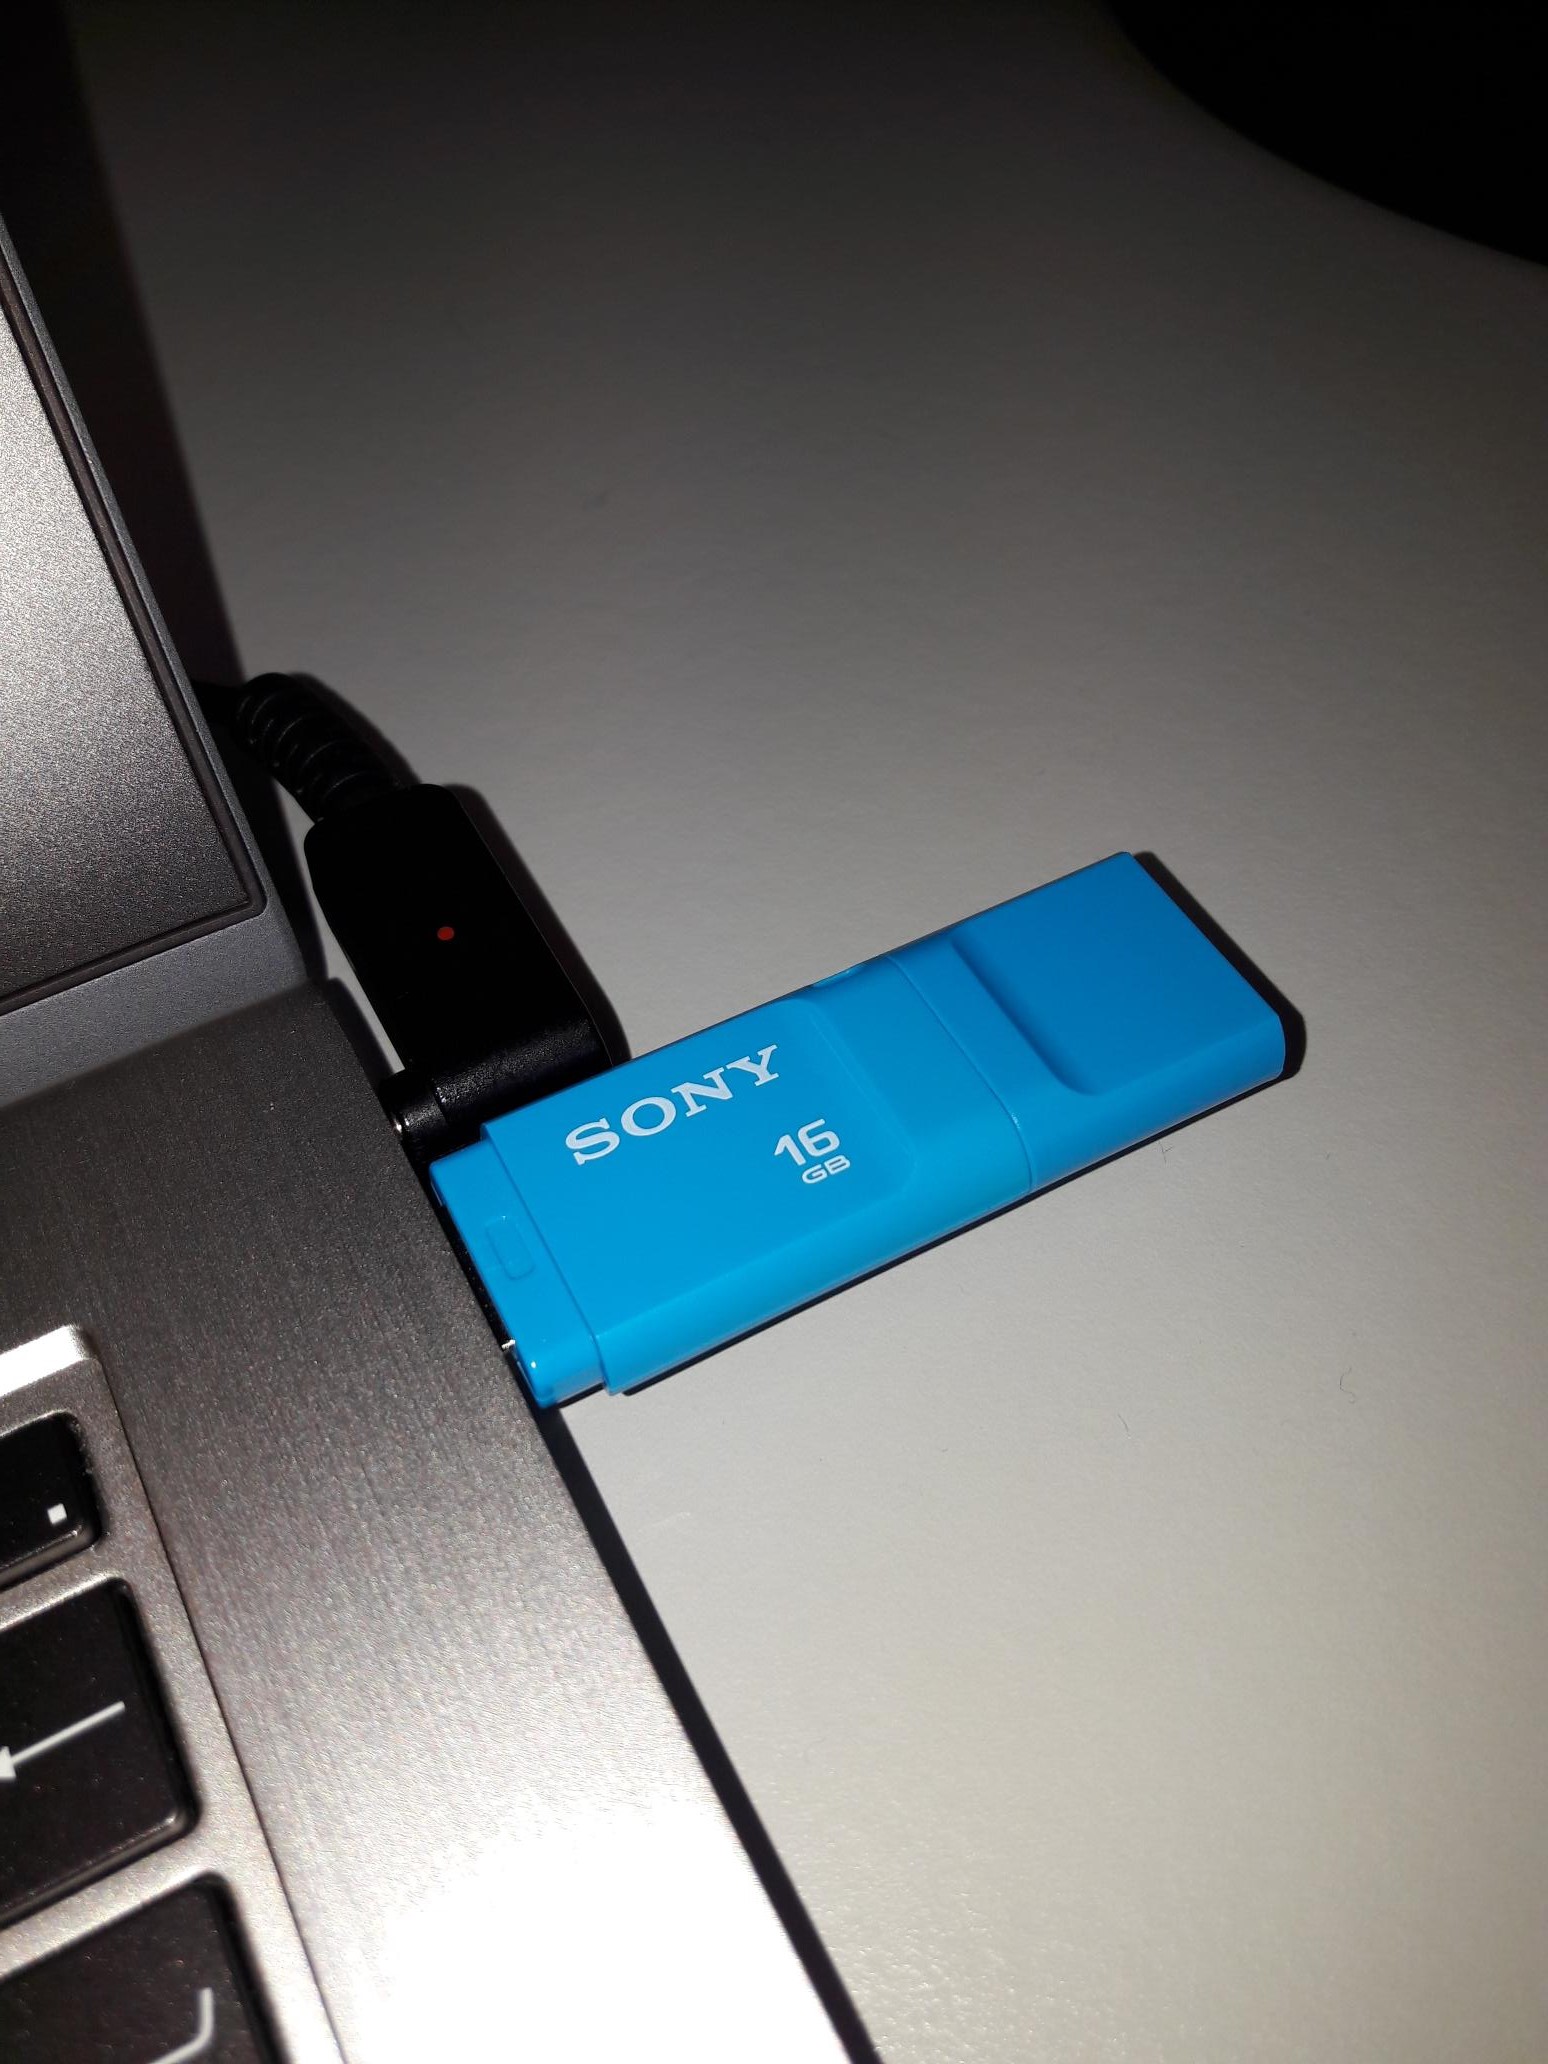 USB-Stick zu langsam - Mikrocontroller.net